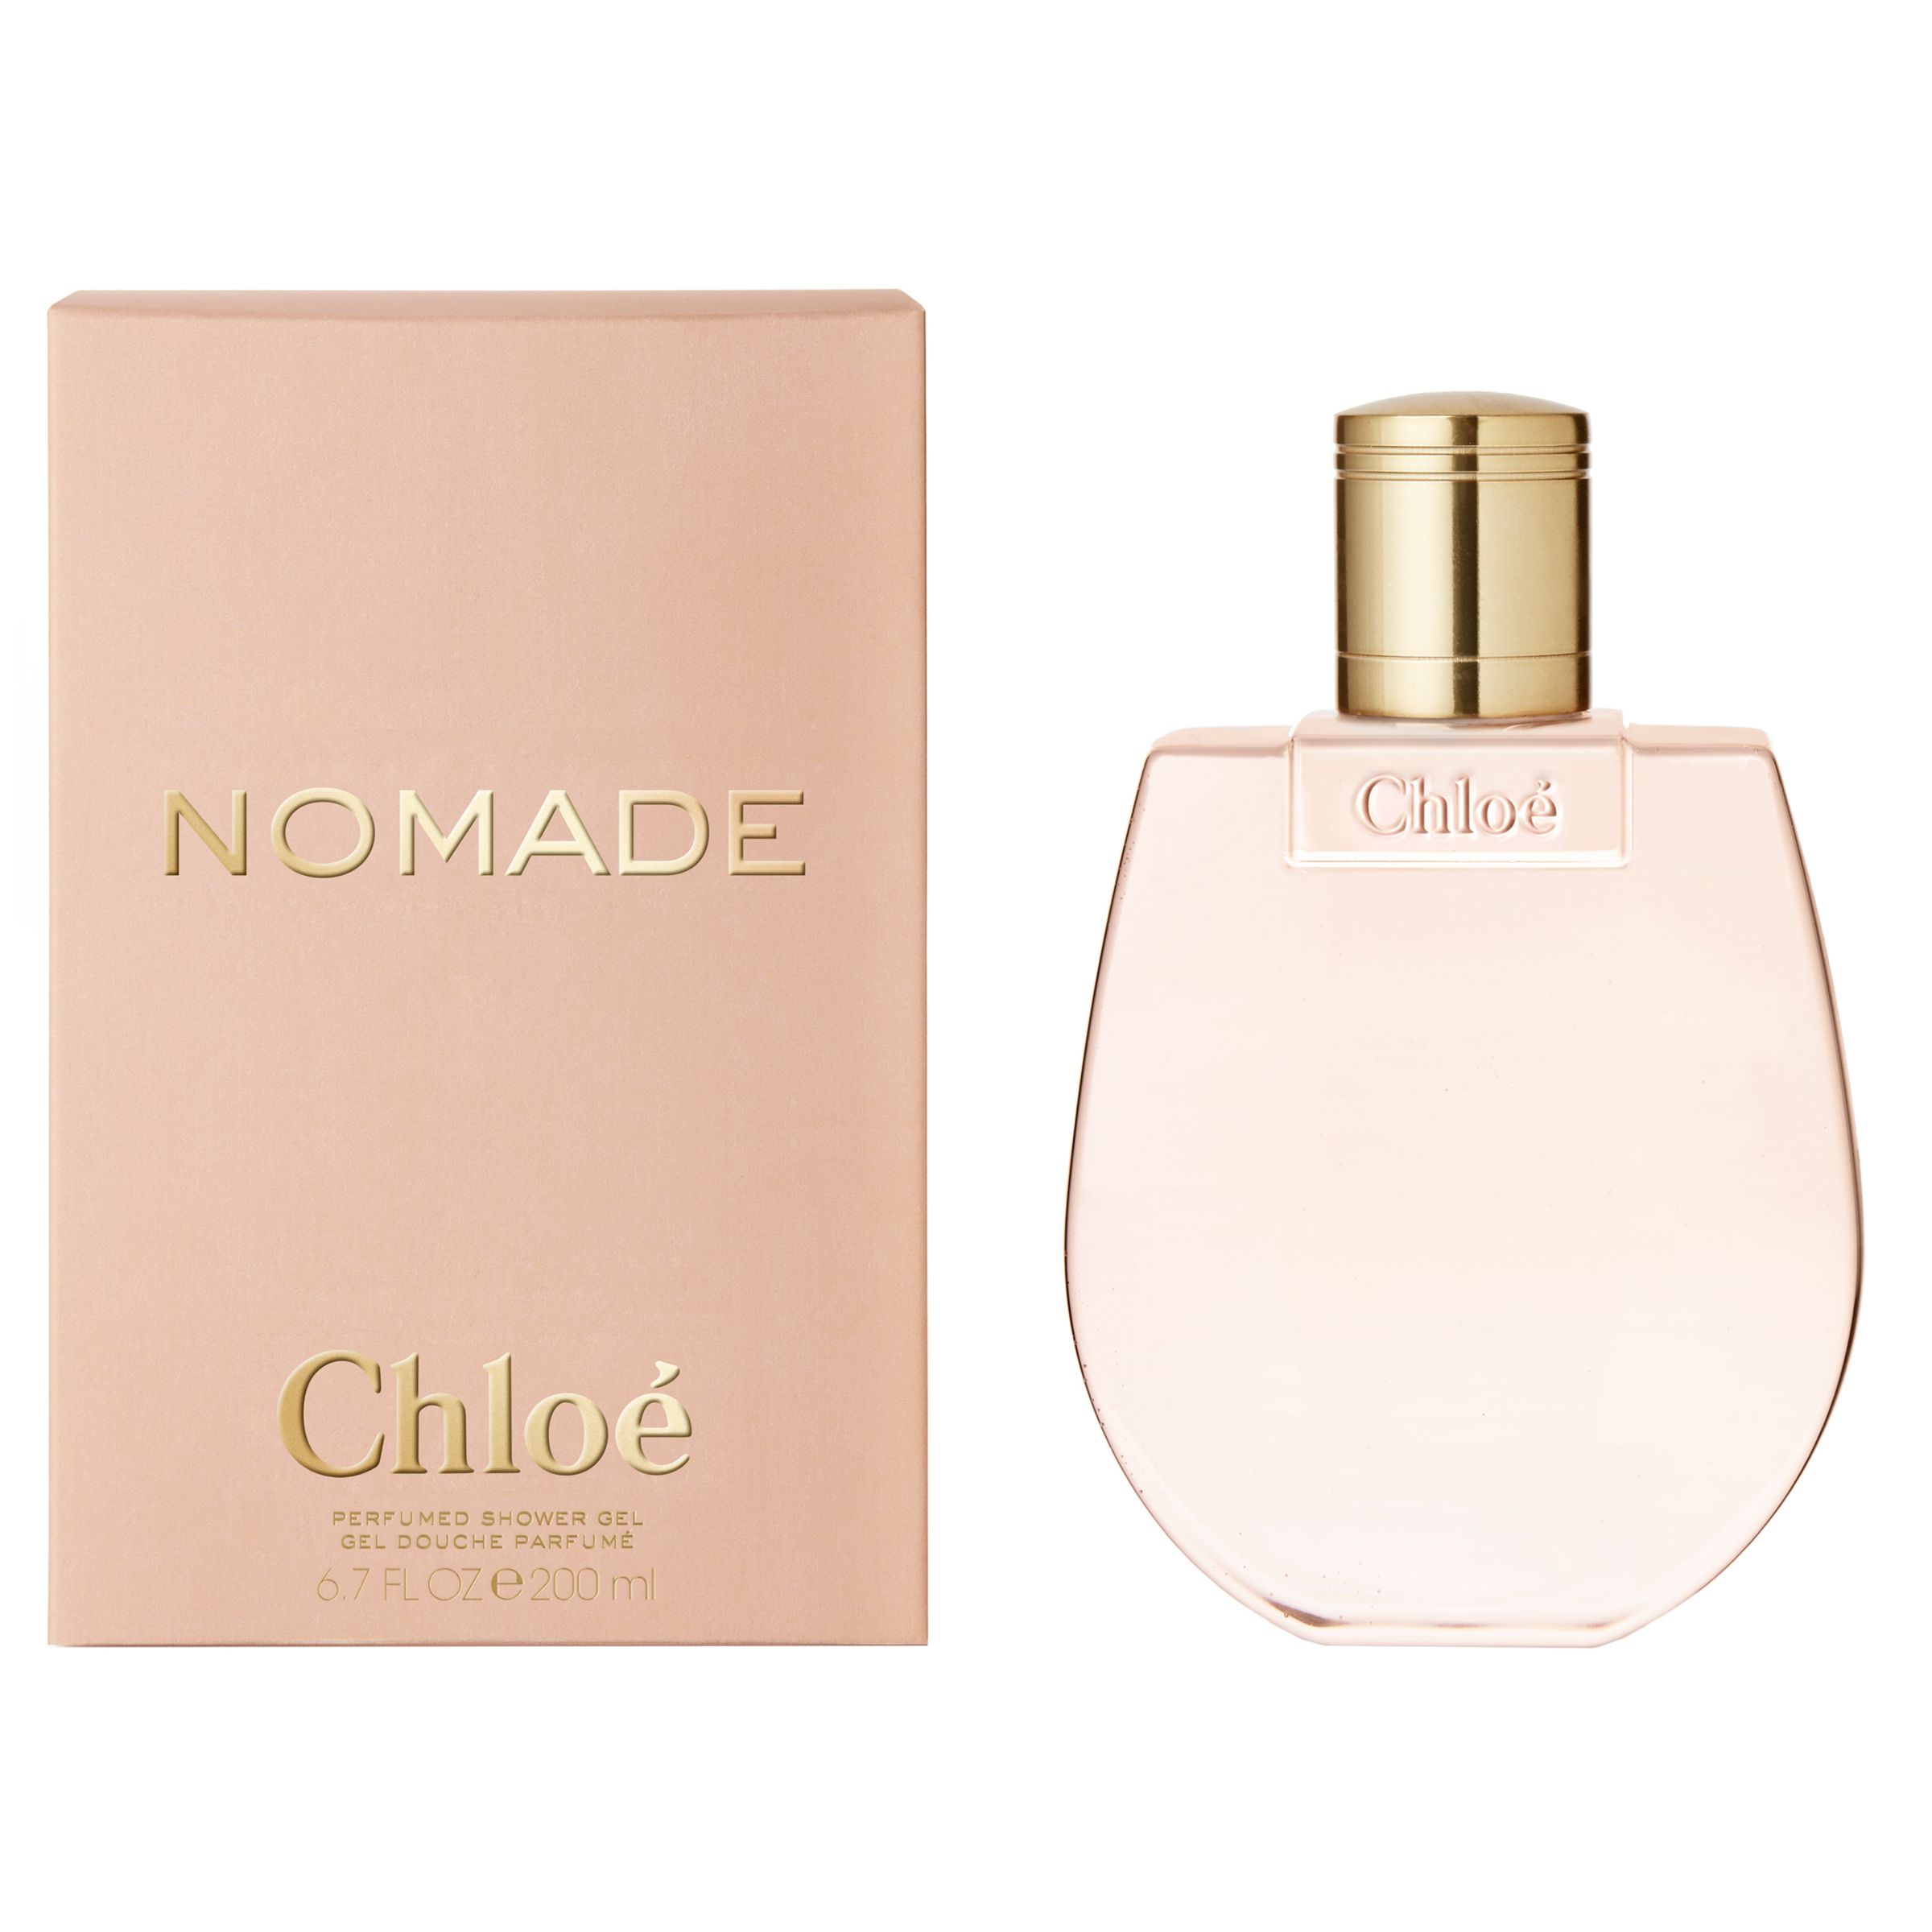 Buy Chloé Nomade Shower Gel, 200ml | John Lewis